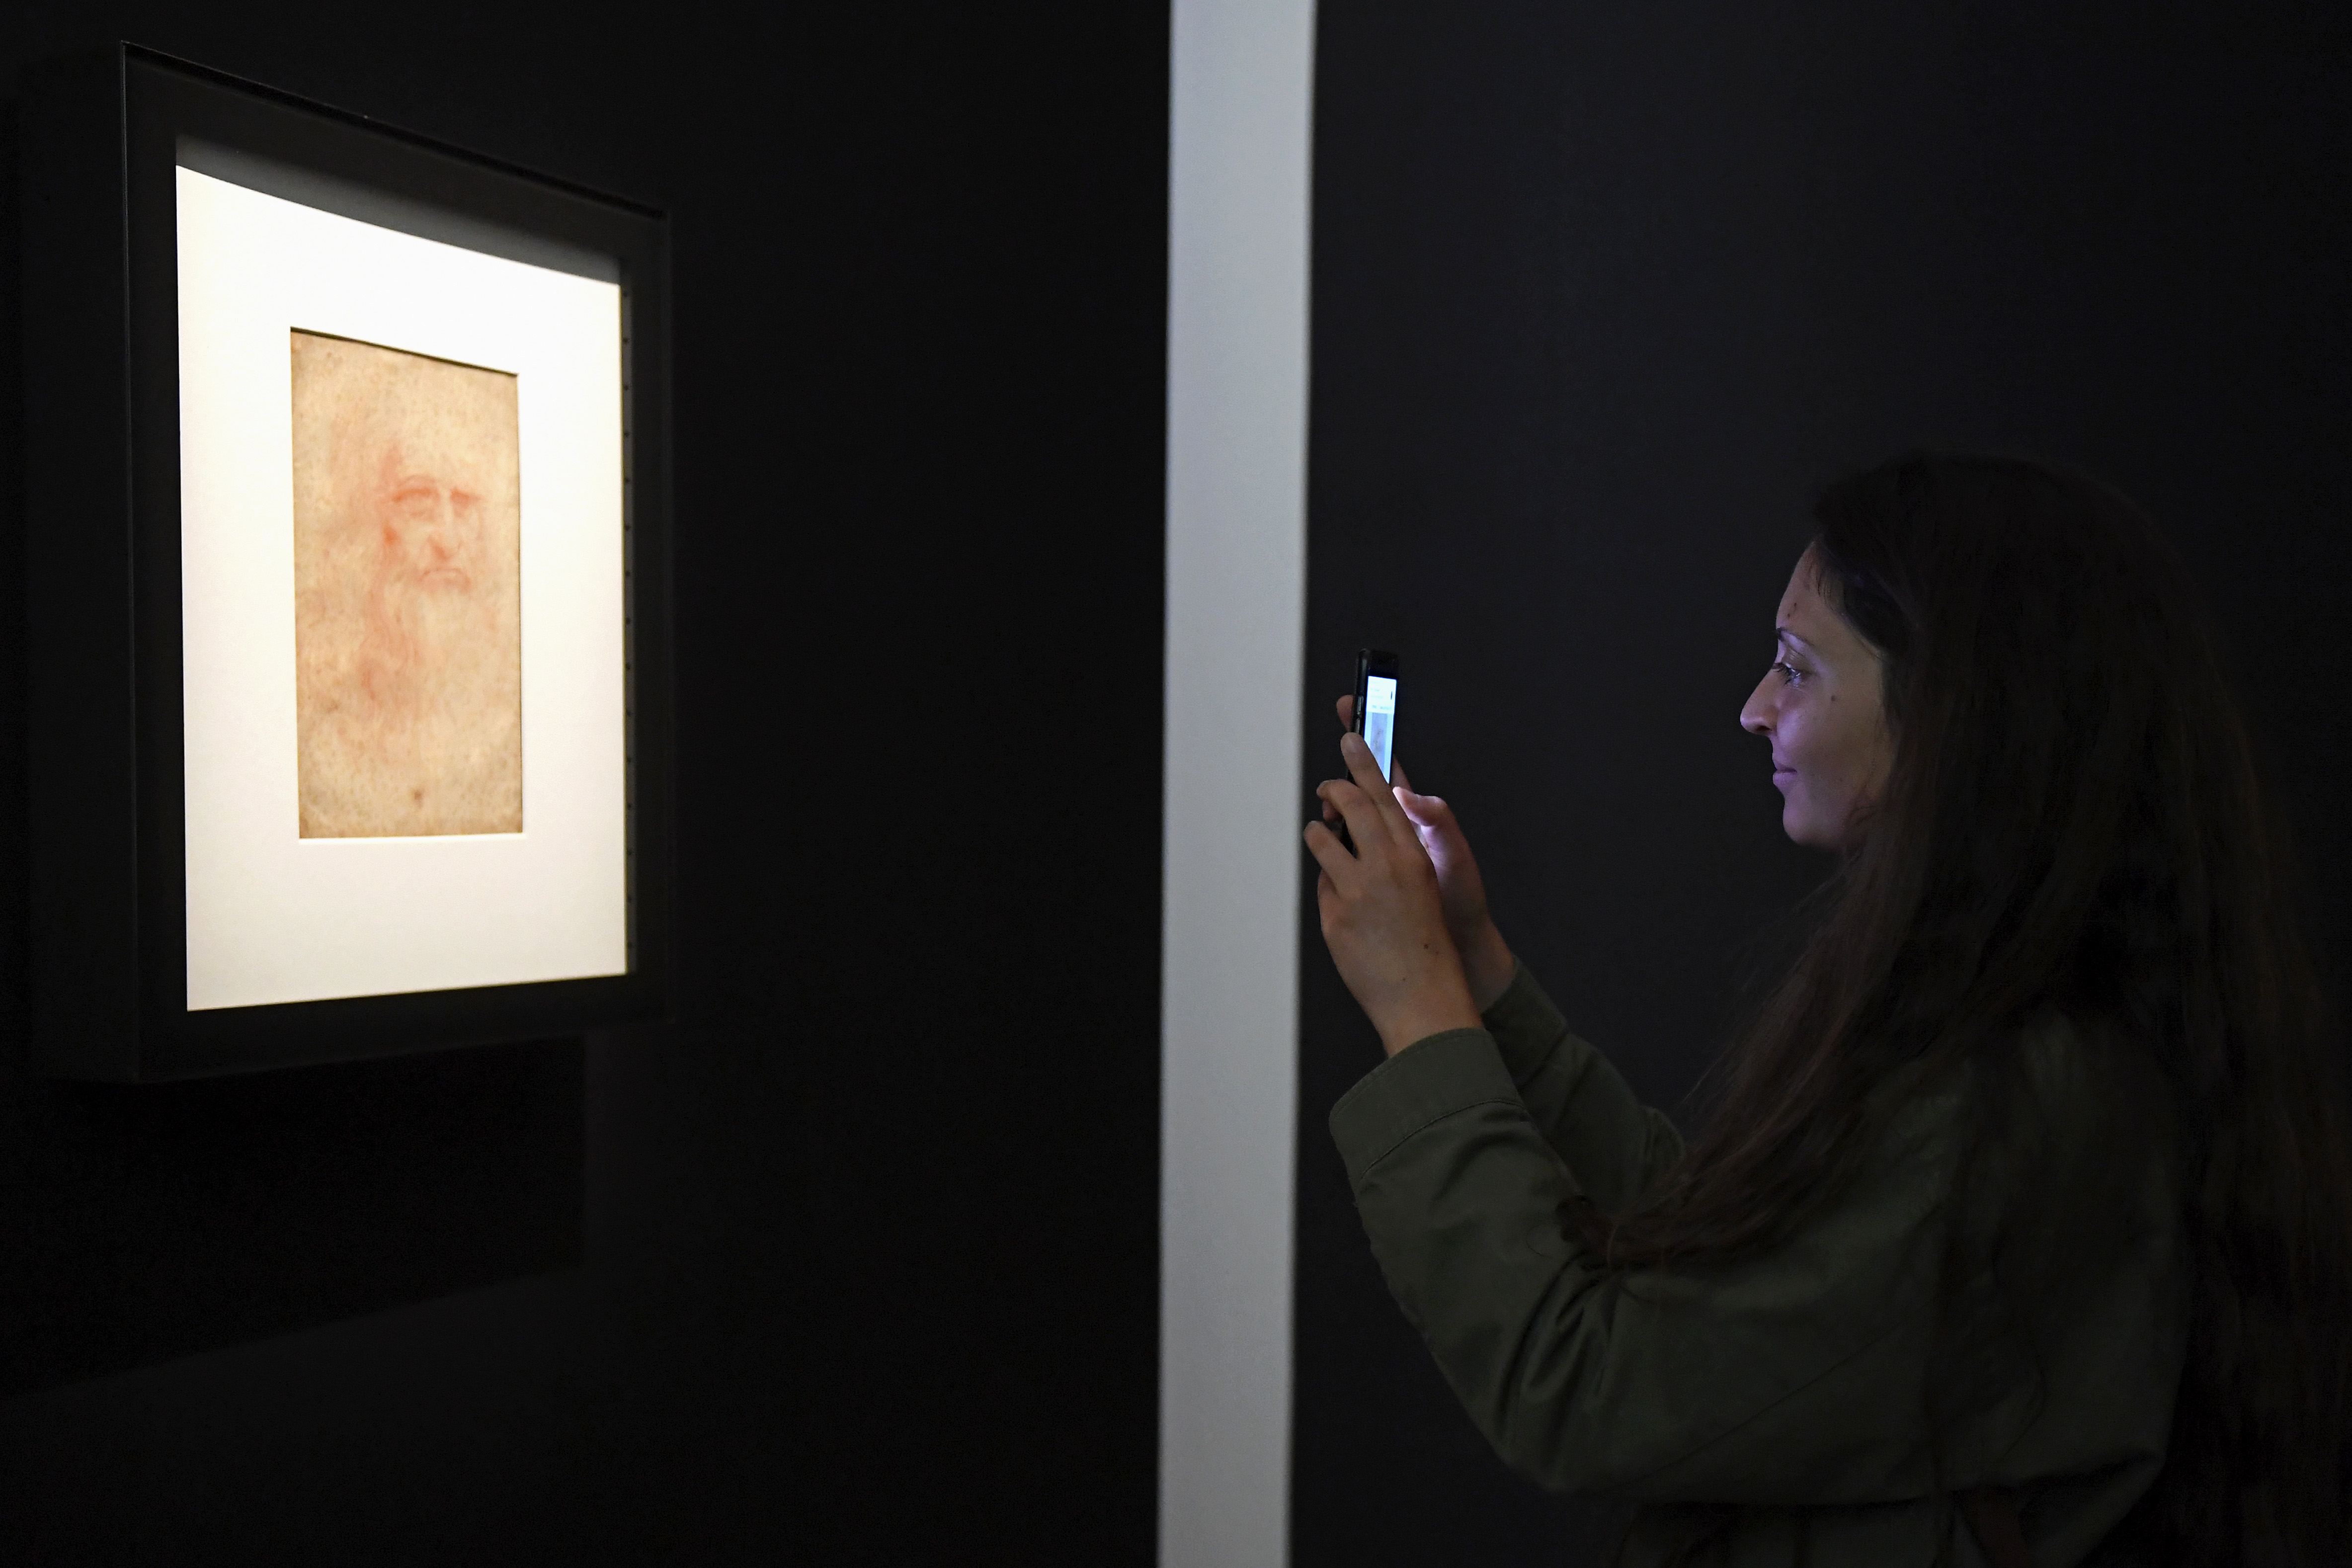 Dal 6 giugno, Leonardo Da Vinci, in mostra a Venezia e Torino,  sul canale di Sky dedicato all’arte.